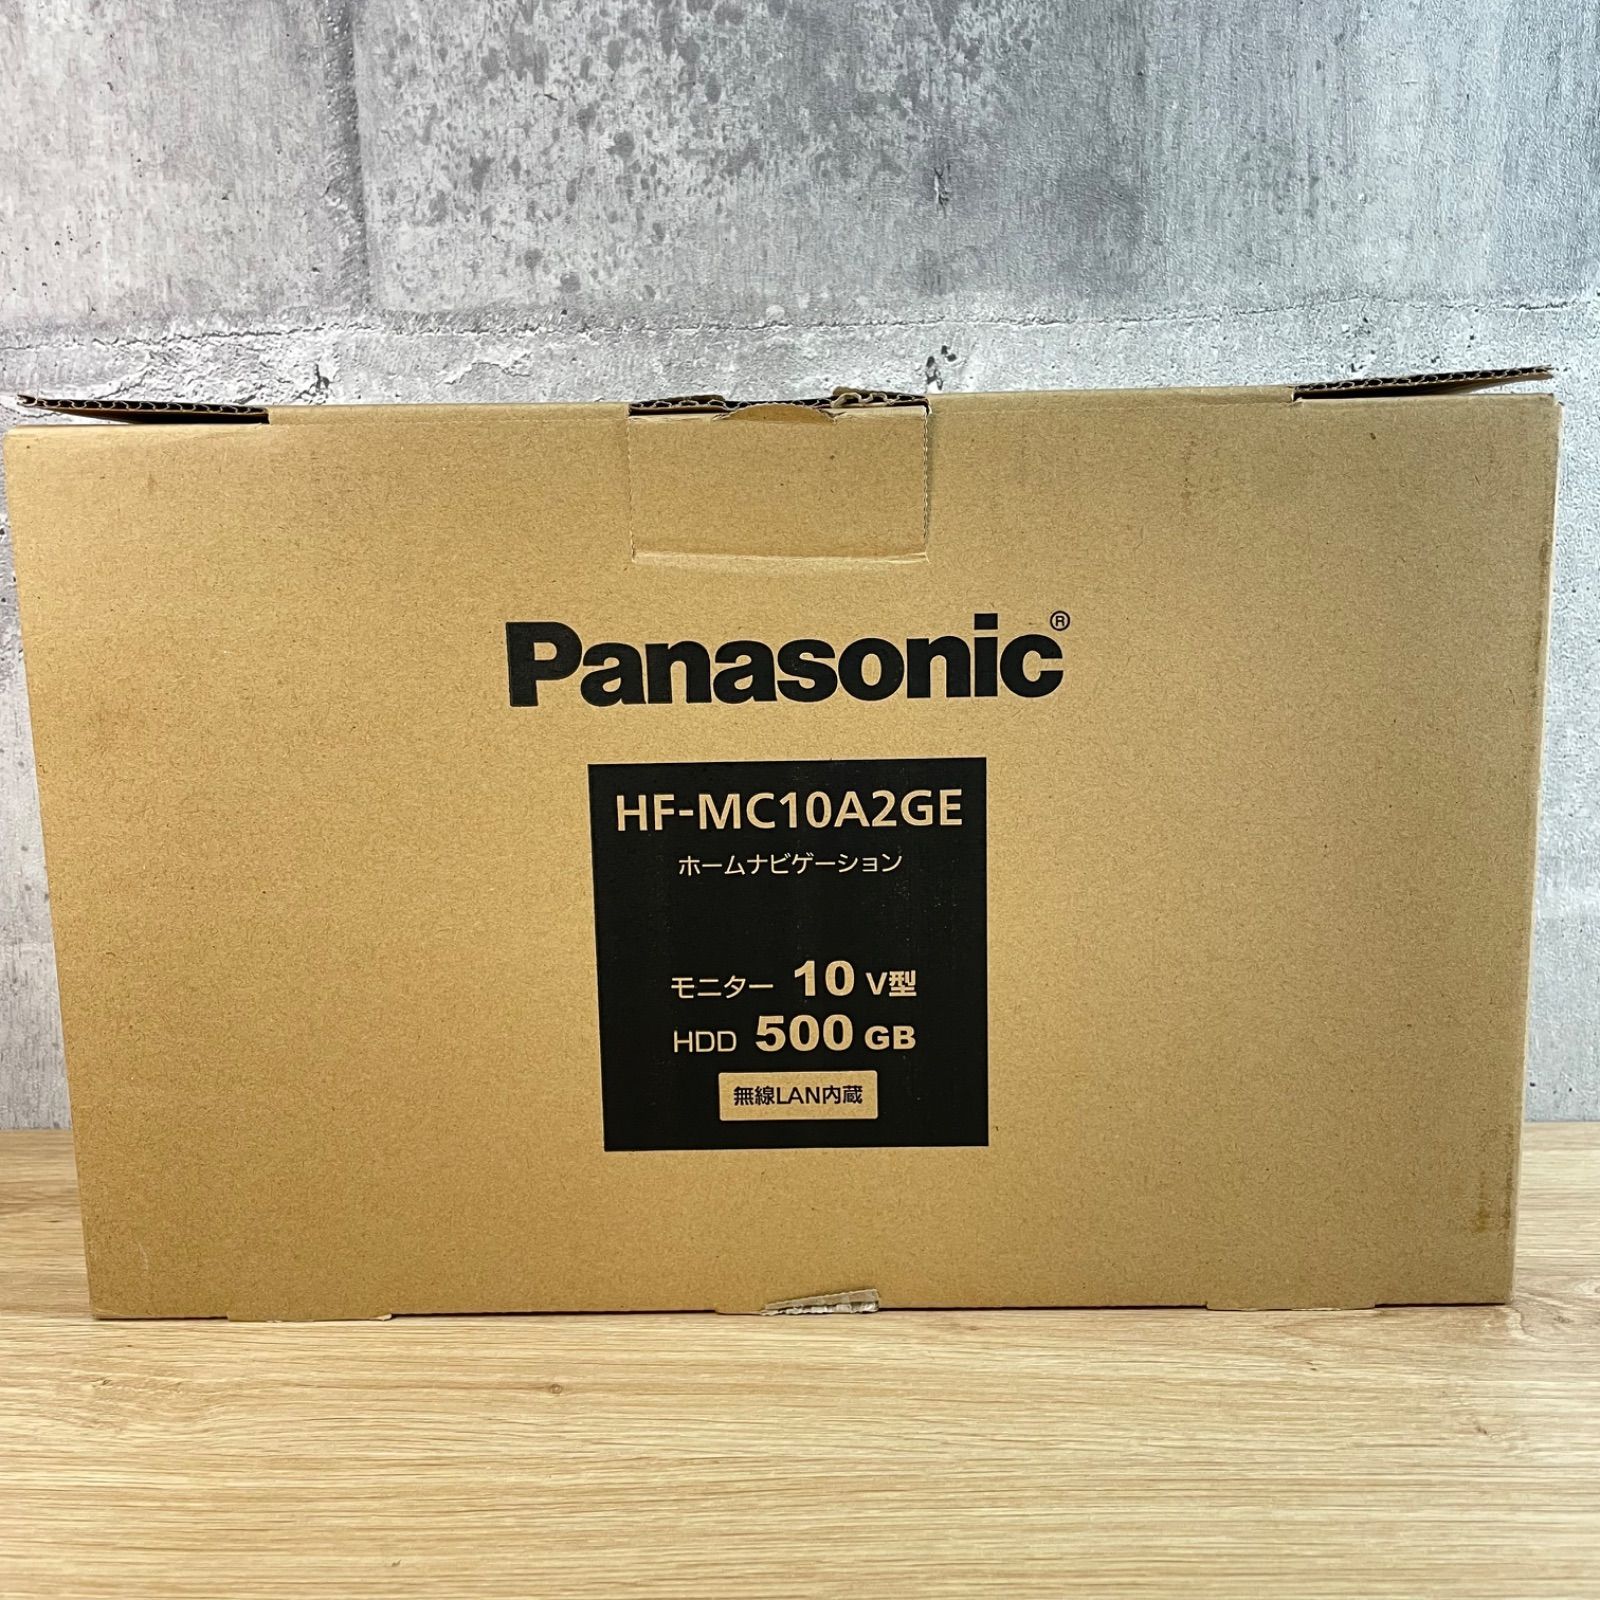 Panasonic パナソニック ホームナビゲーション HF-MC10A2GE 買取いちばんドットコム メルカリ